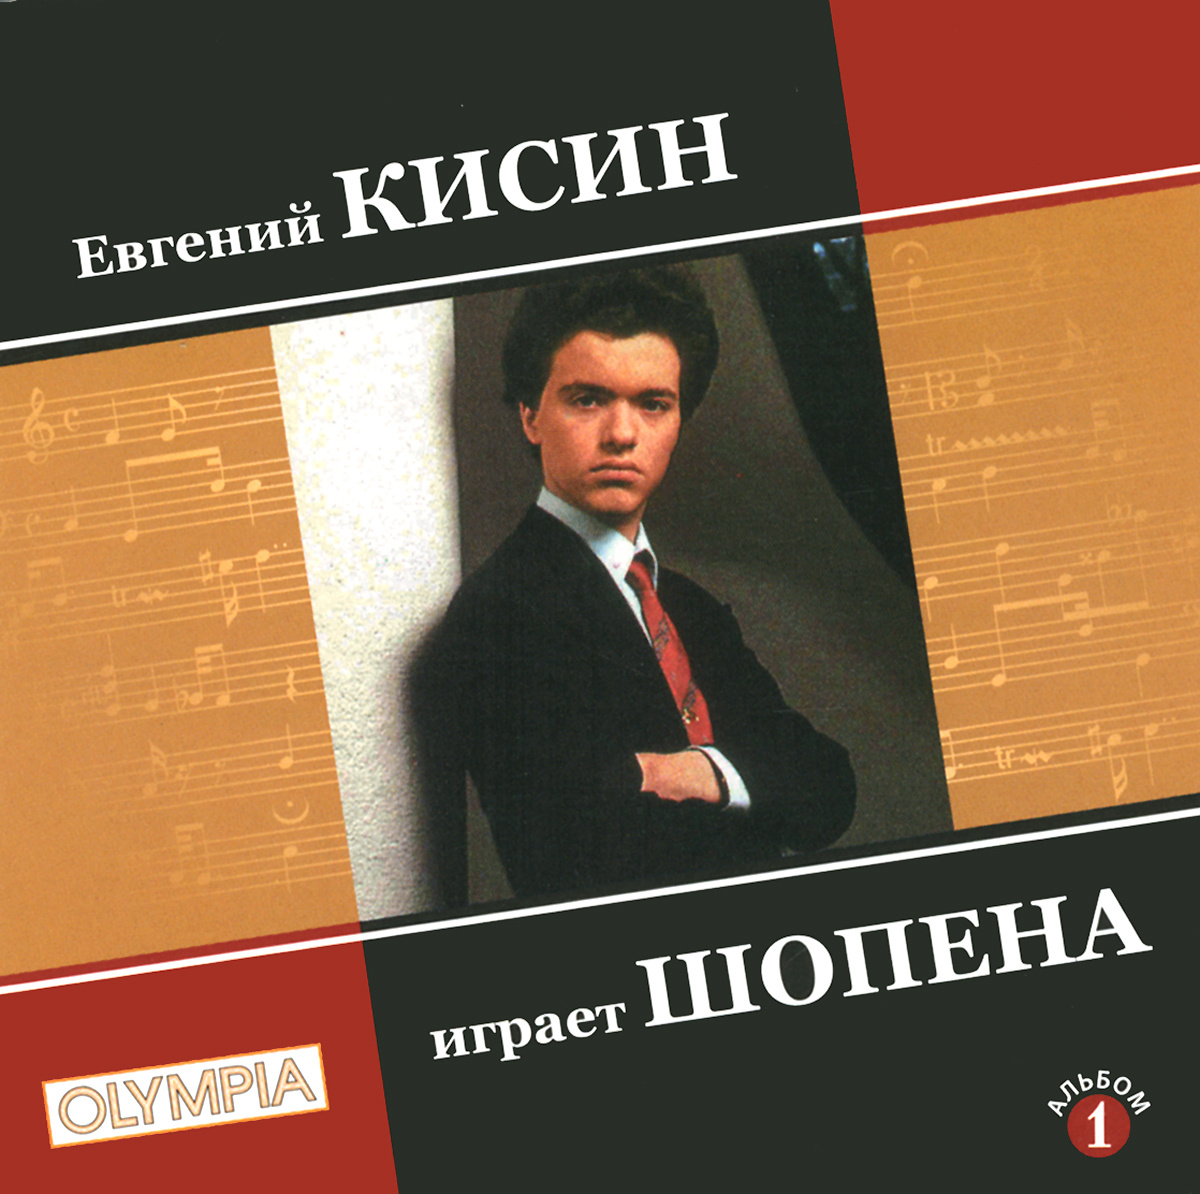 Евгений Кисин играет Шопена #1.